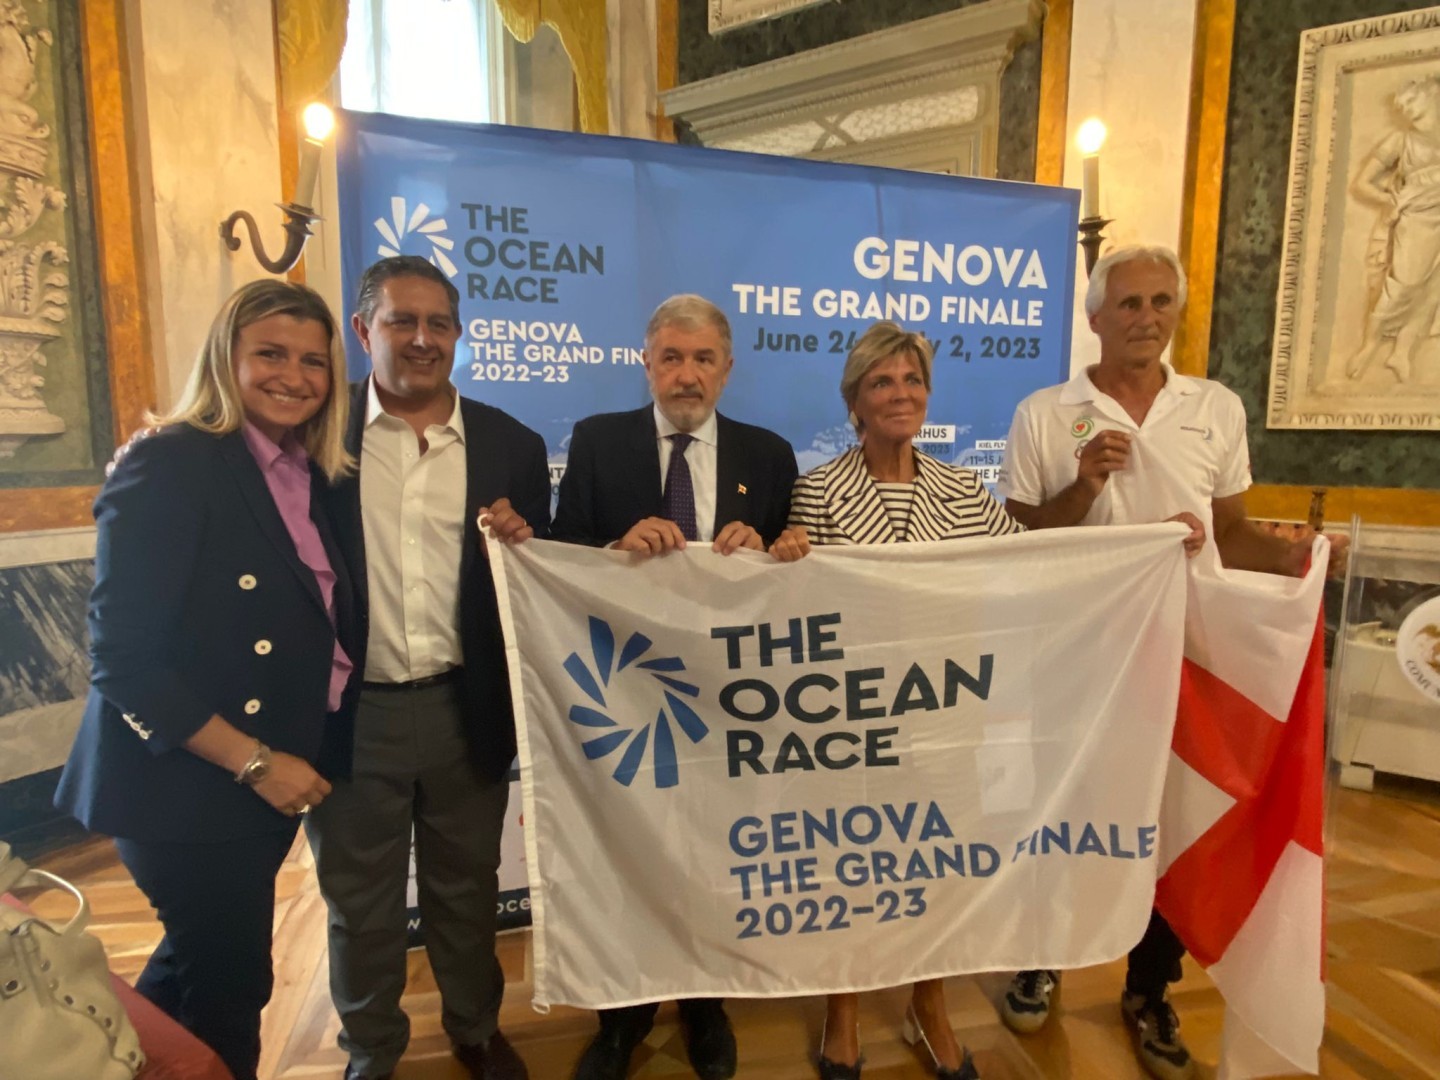 Un anno all’arrivo di “The Ocean Race”
Inizia il conto alla rovescia di “Genova The Grand Finale”